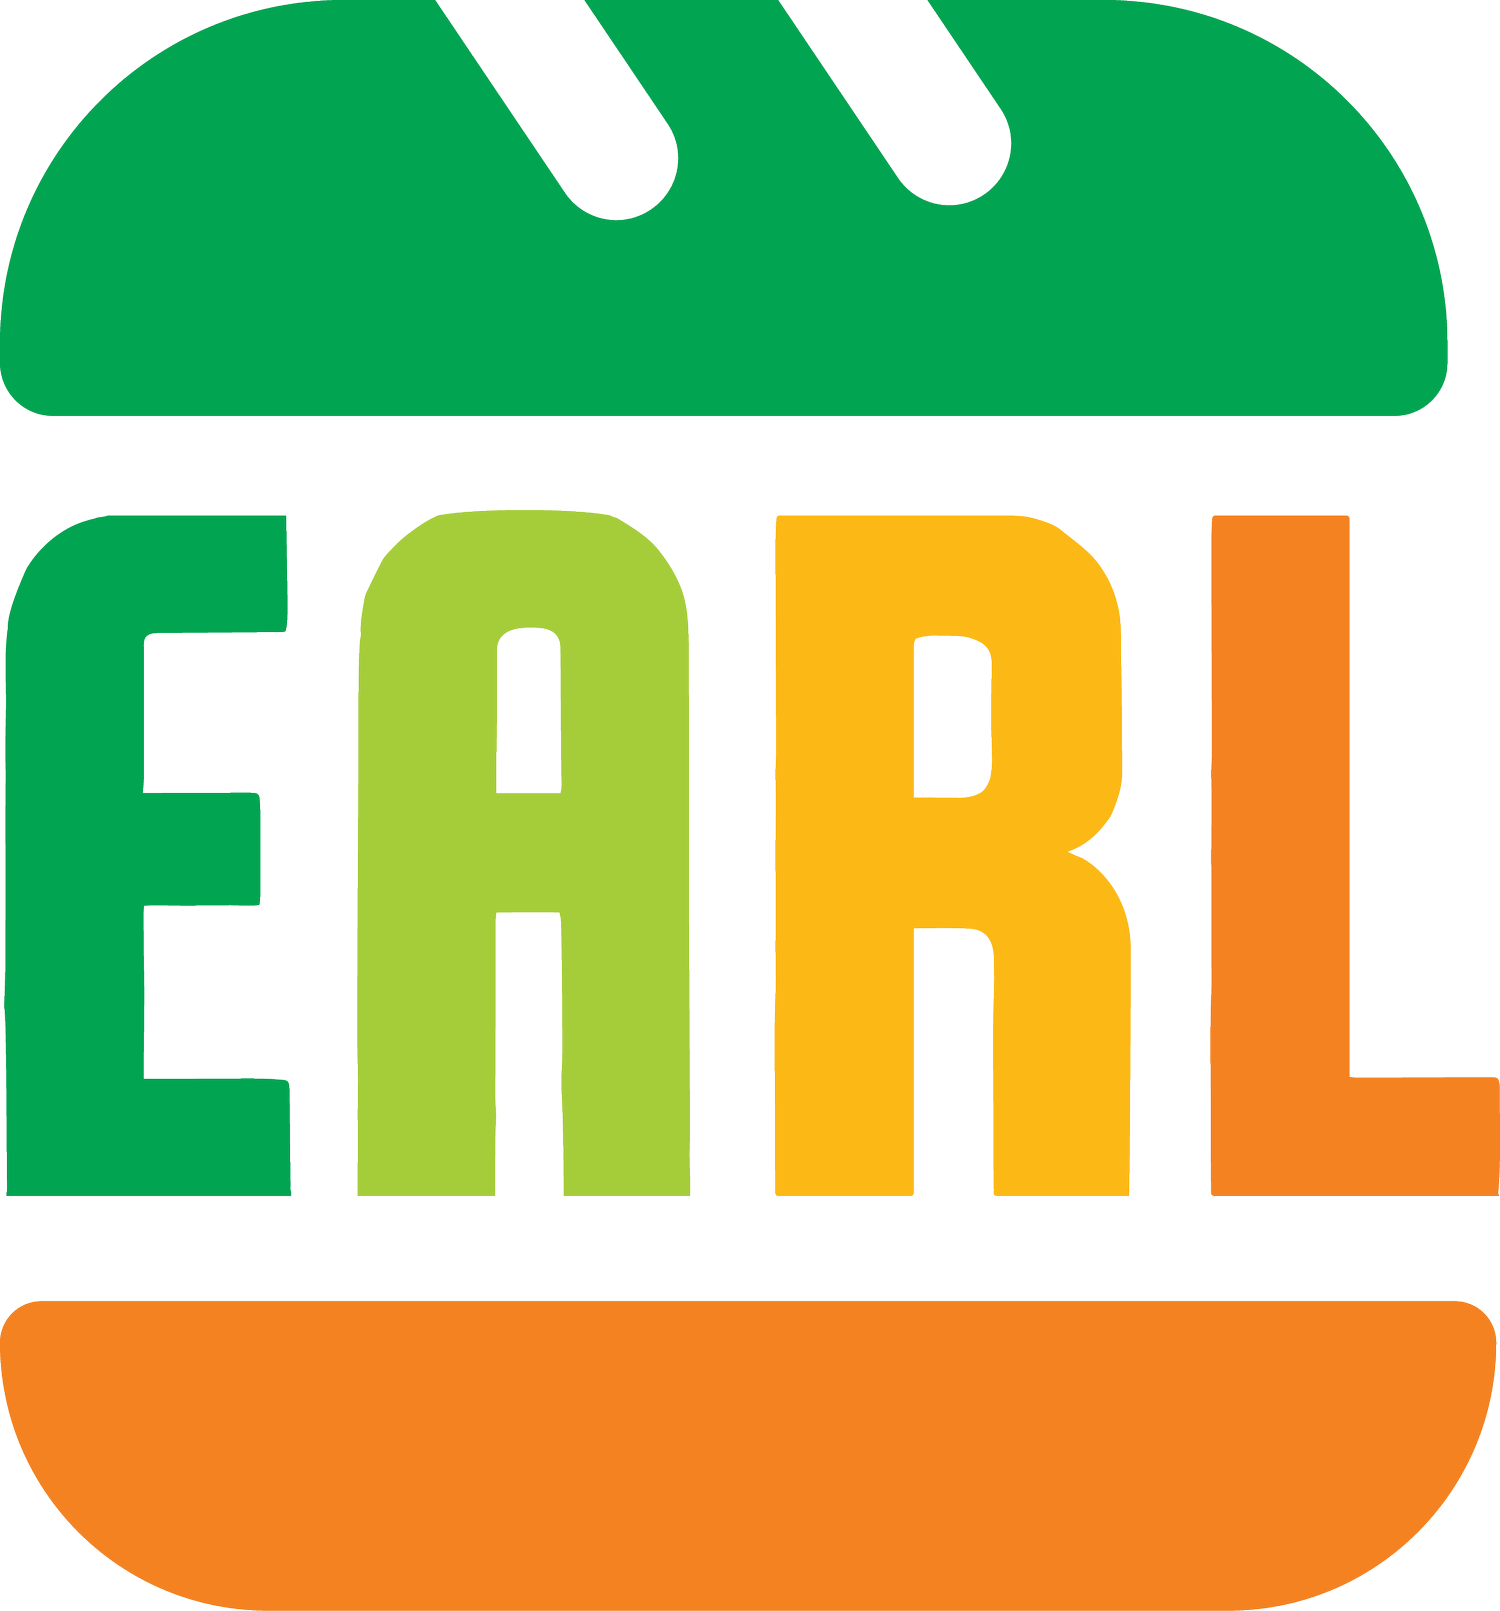 EARL